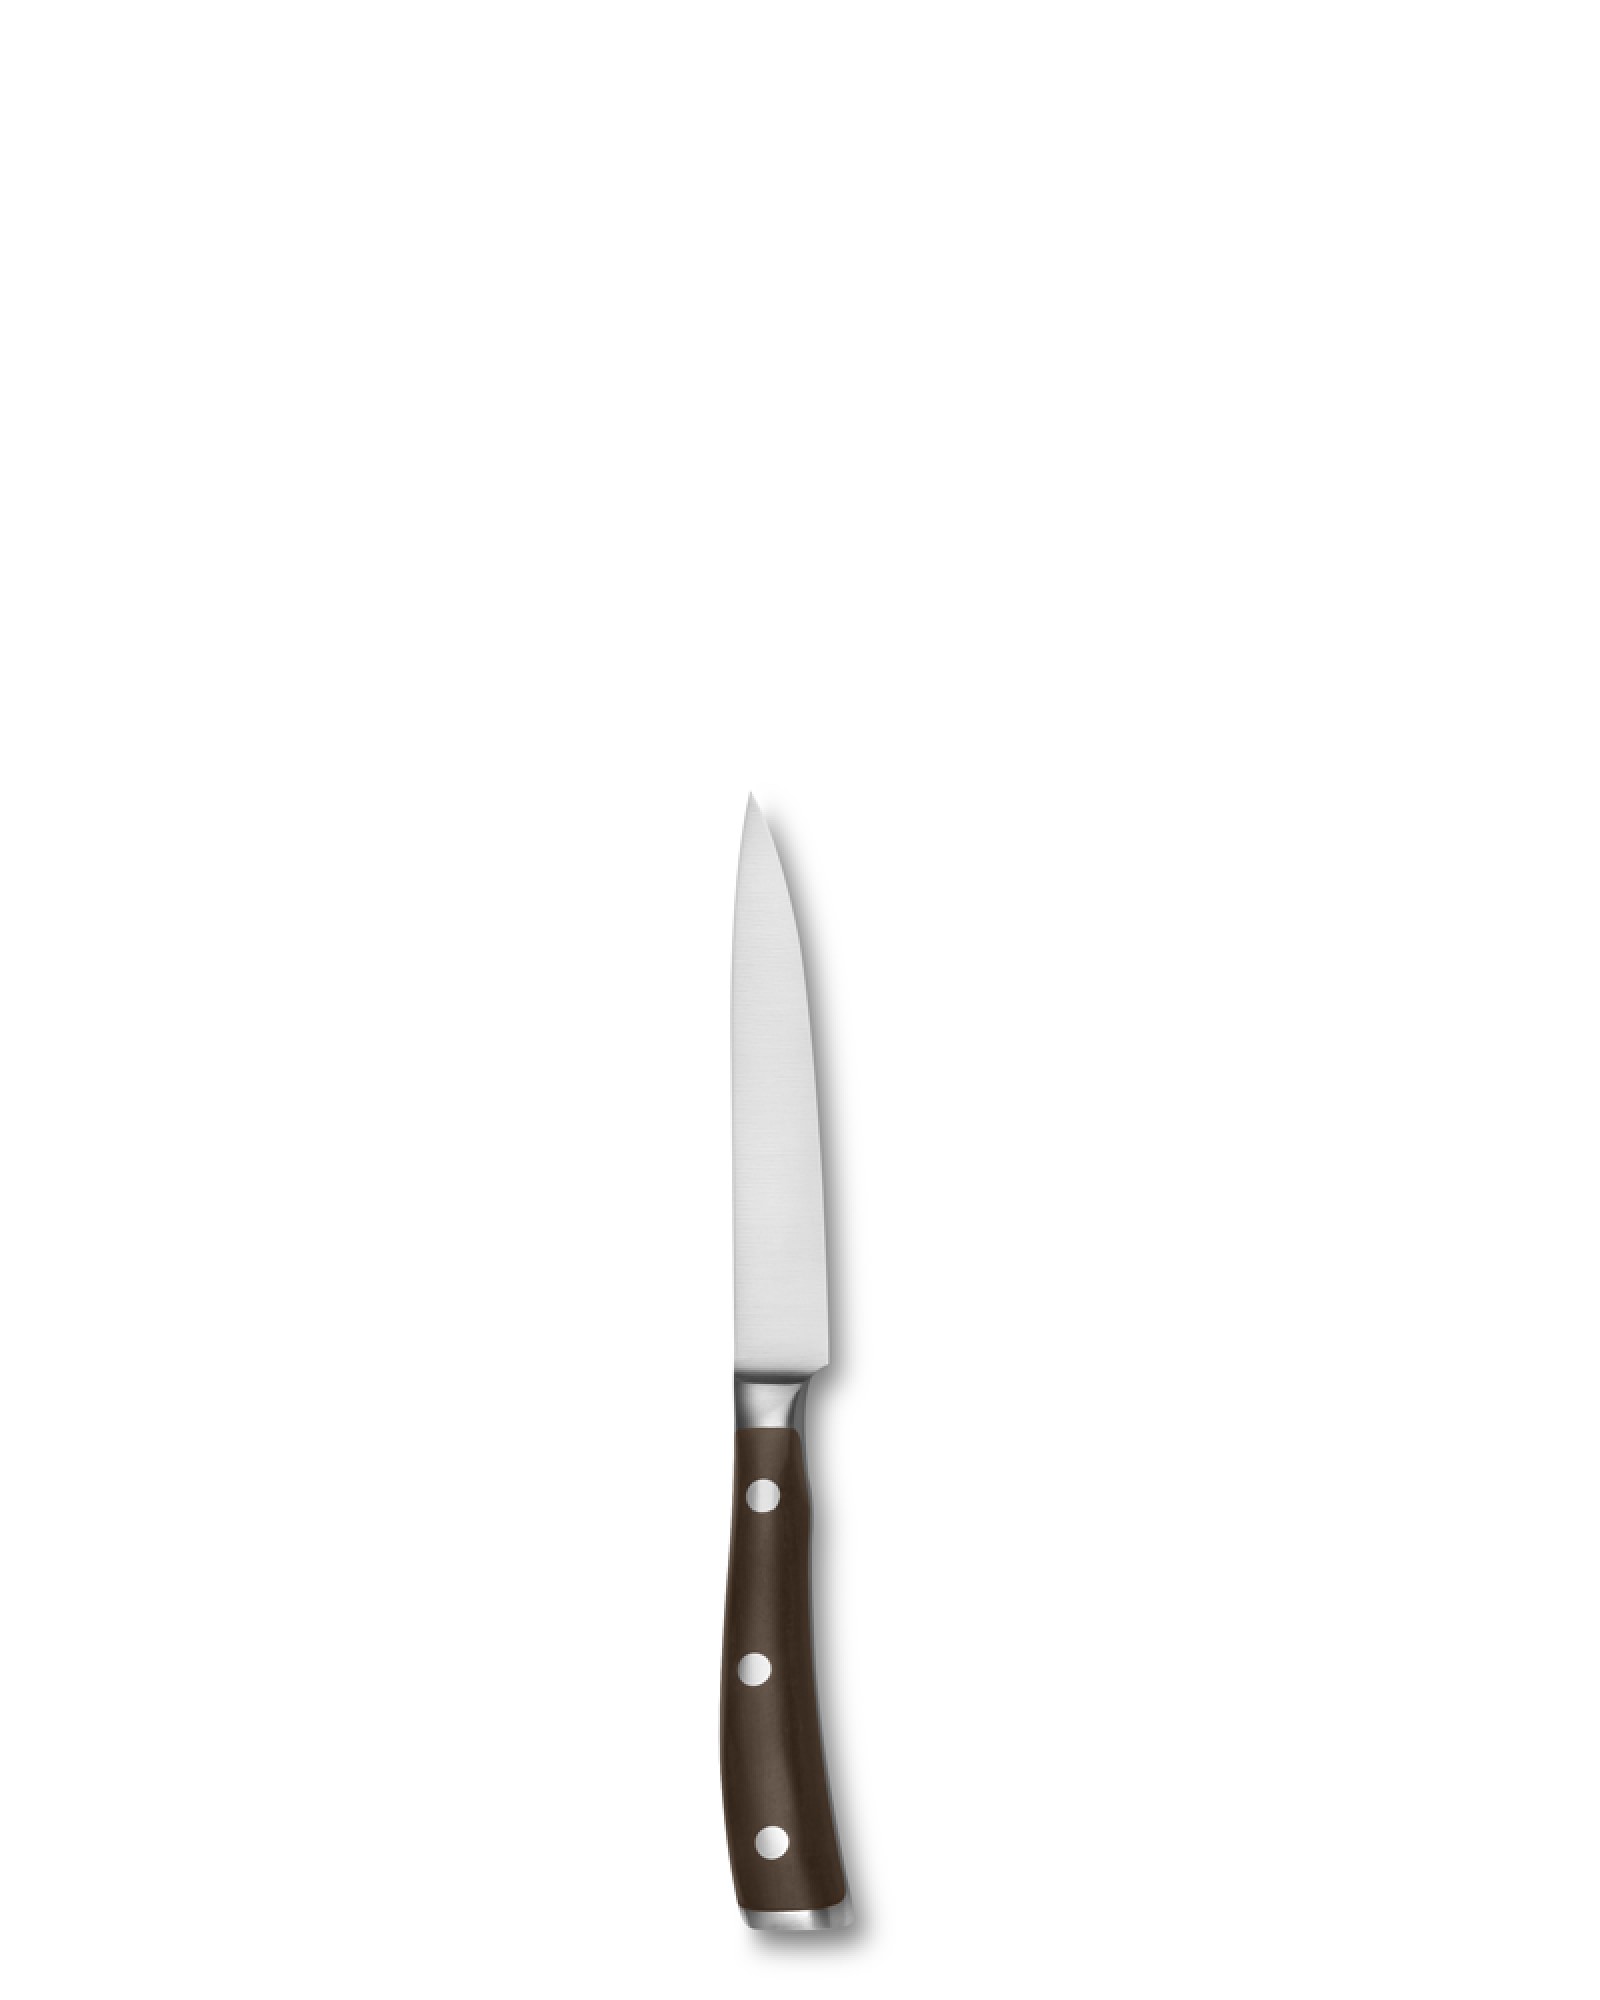 Wüsthof Ikon Blackwood Utility Knife, 4 1/2"